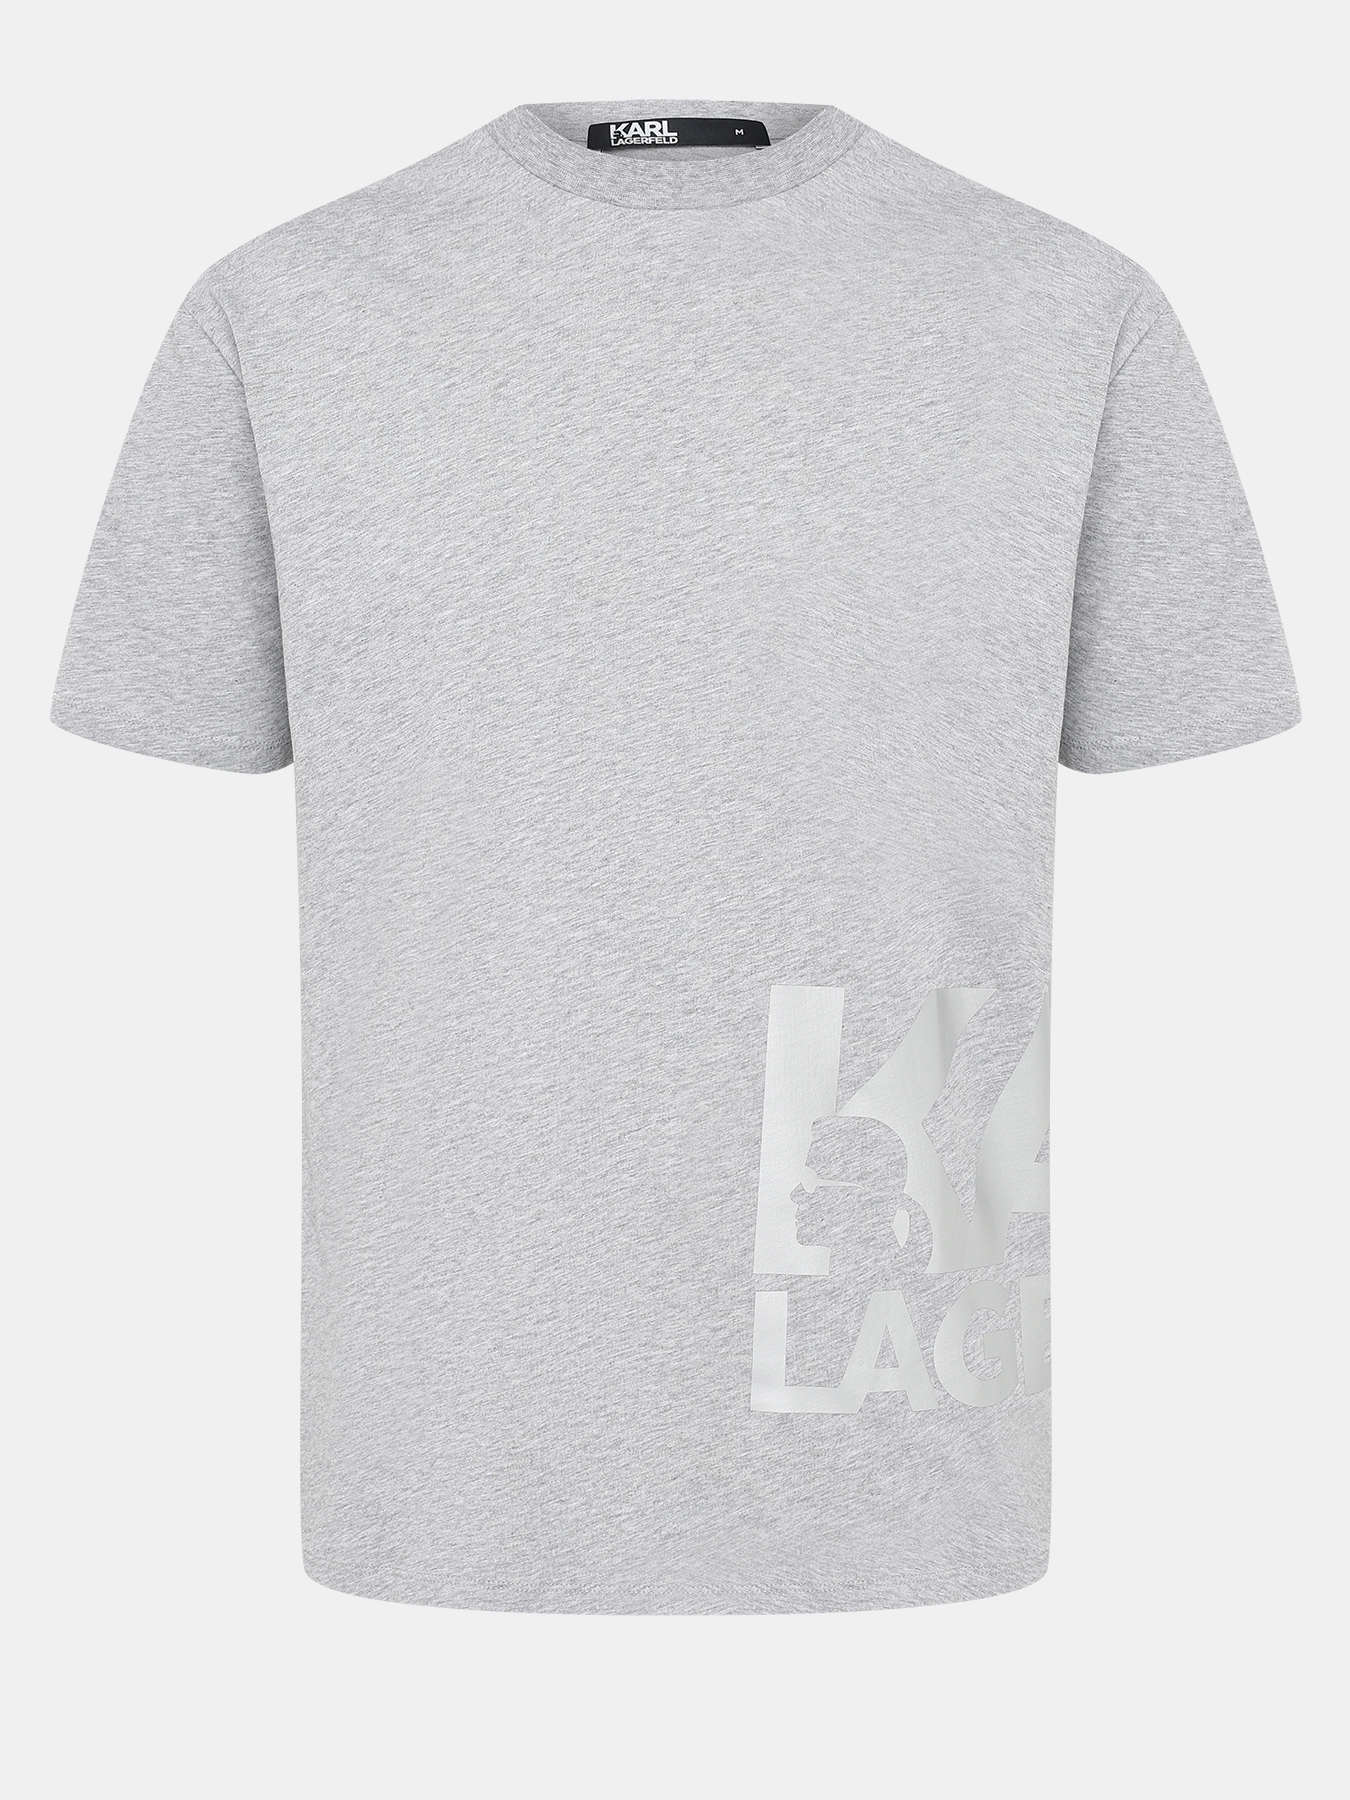 Футболки Karl Lagerfeld Футболка фуфайка футболка karl lagerfeld футболка